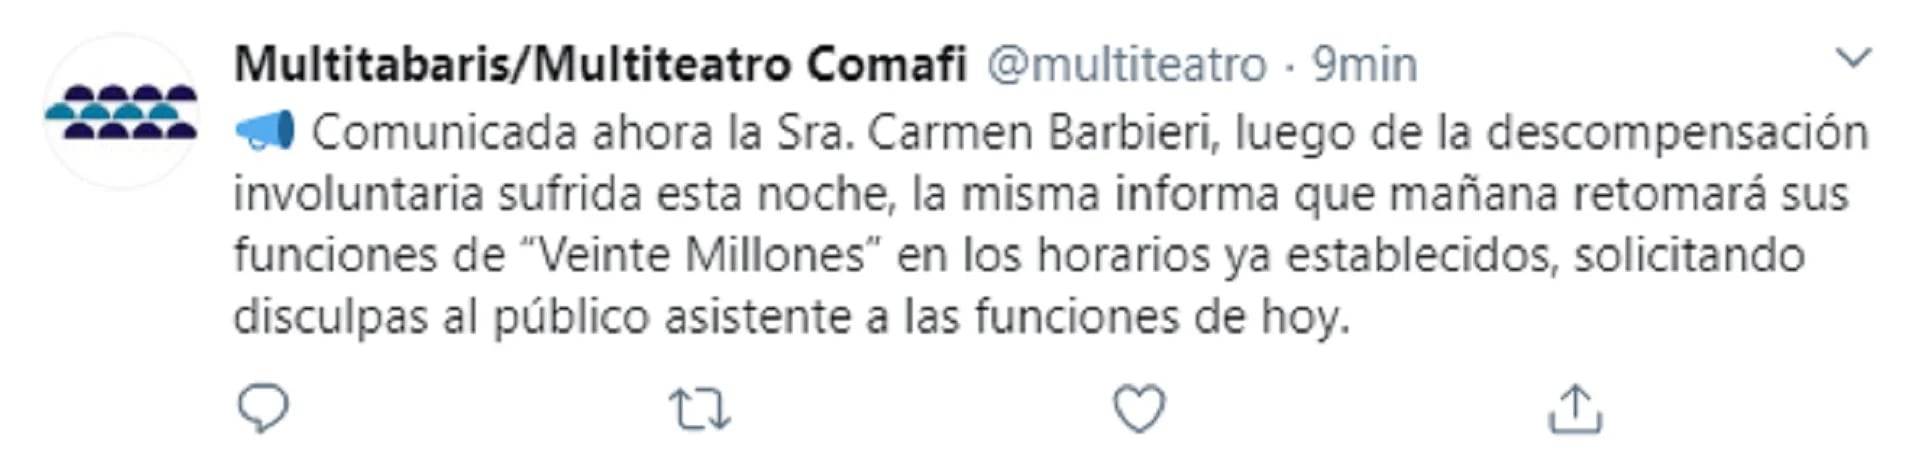 Tuit sobre la salud de Carmen Barbieri